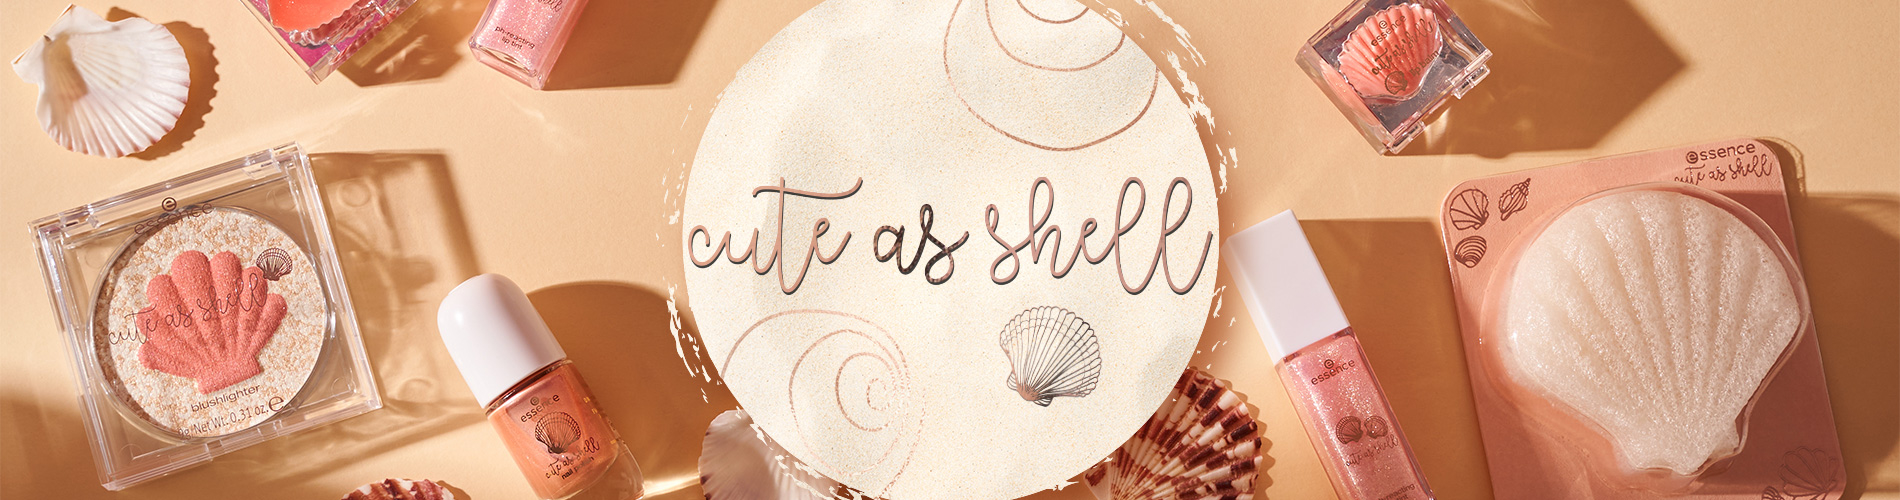 Zaronite u more puno školjaka uz novu essence trendovsku kolekciju “cute as shell”